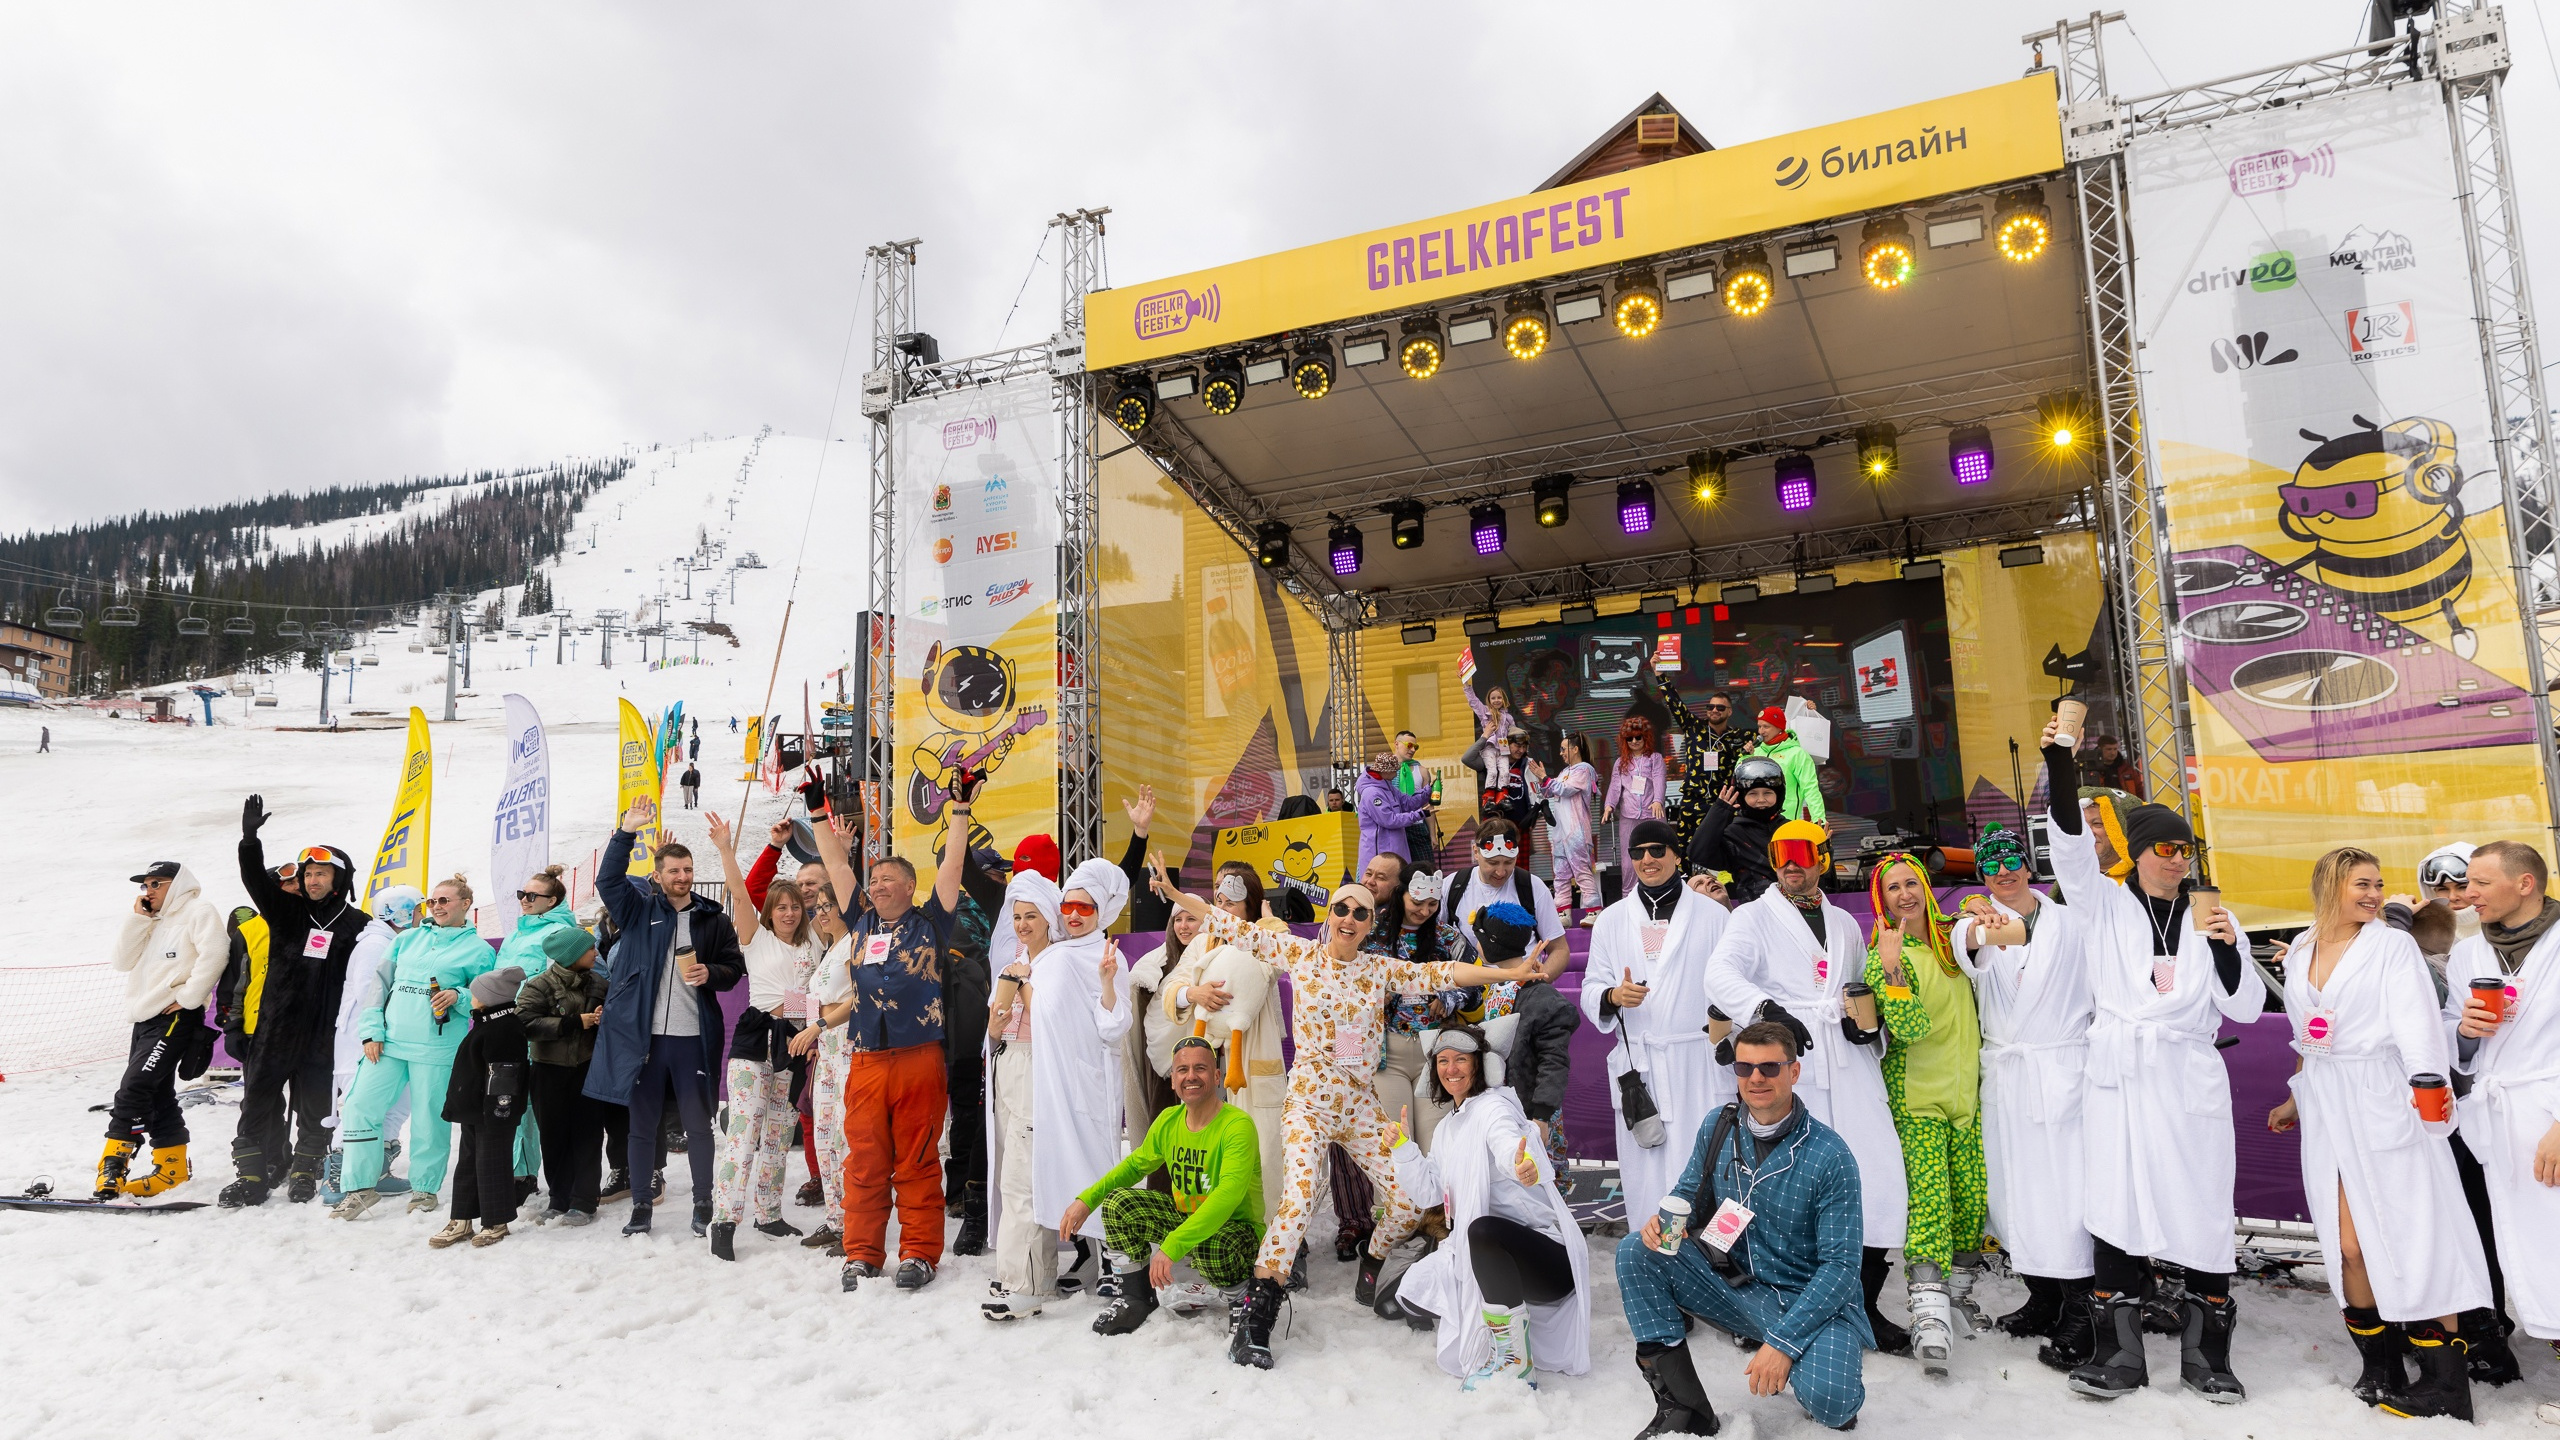 «Подъемники пустые»: туристы оказались недовольны фестивалем «Грелка» в Шерегеше — что они говорят